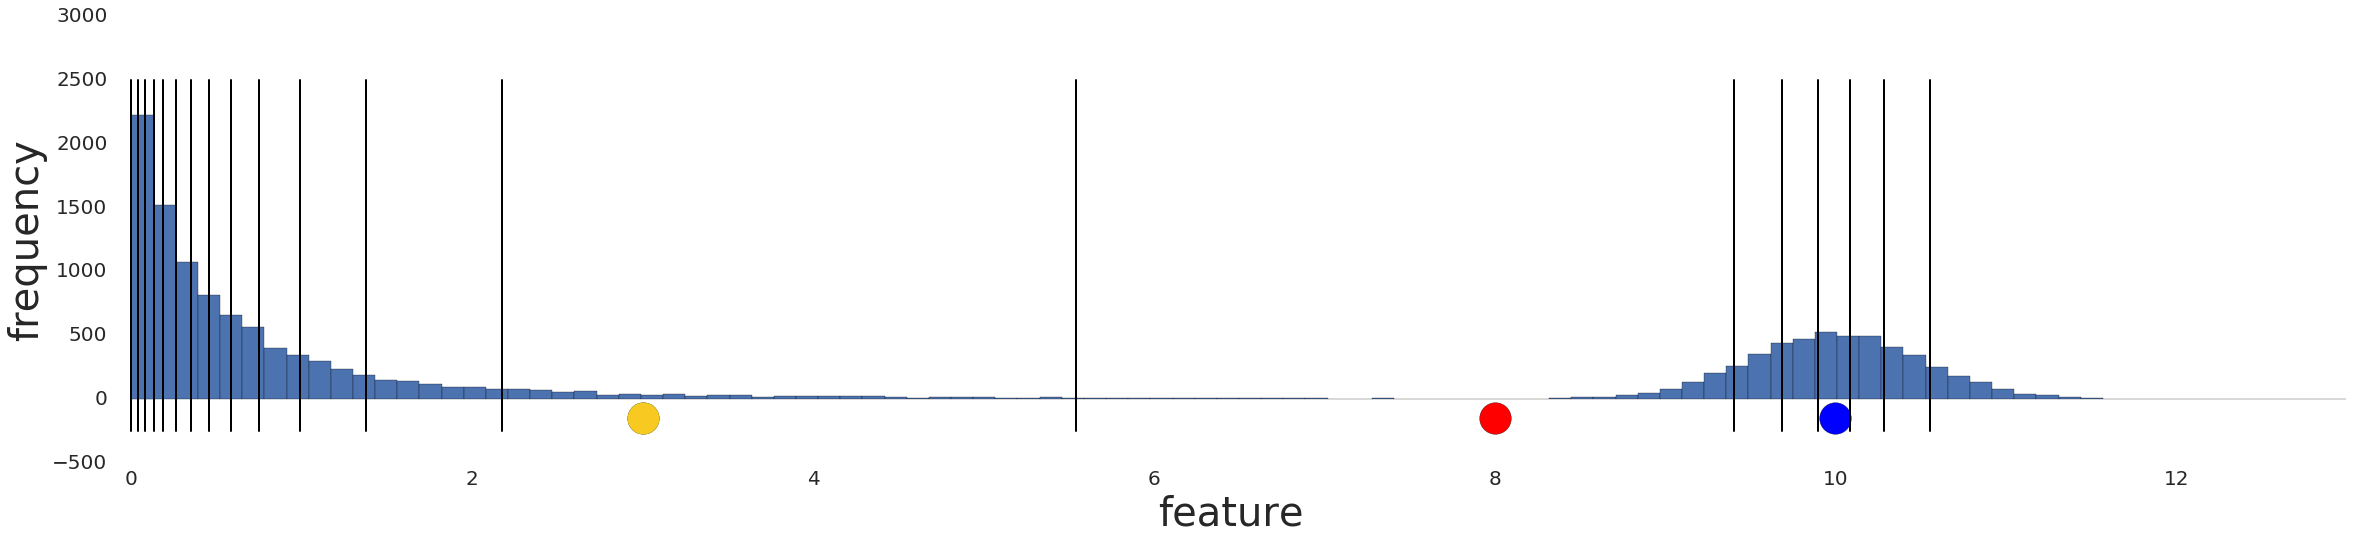 Graphique affichant les données après la conversion
  en quantiles. La ligne représente 20 intervalles.]